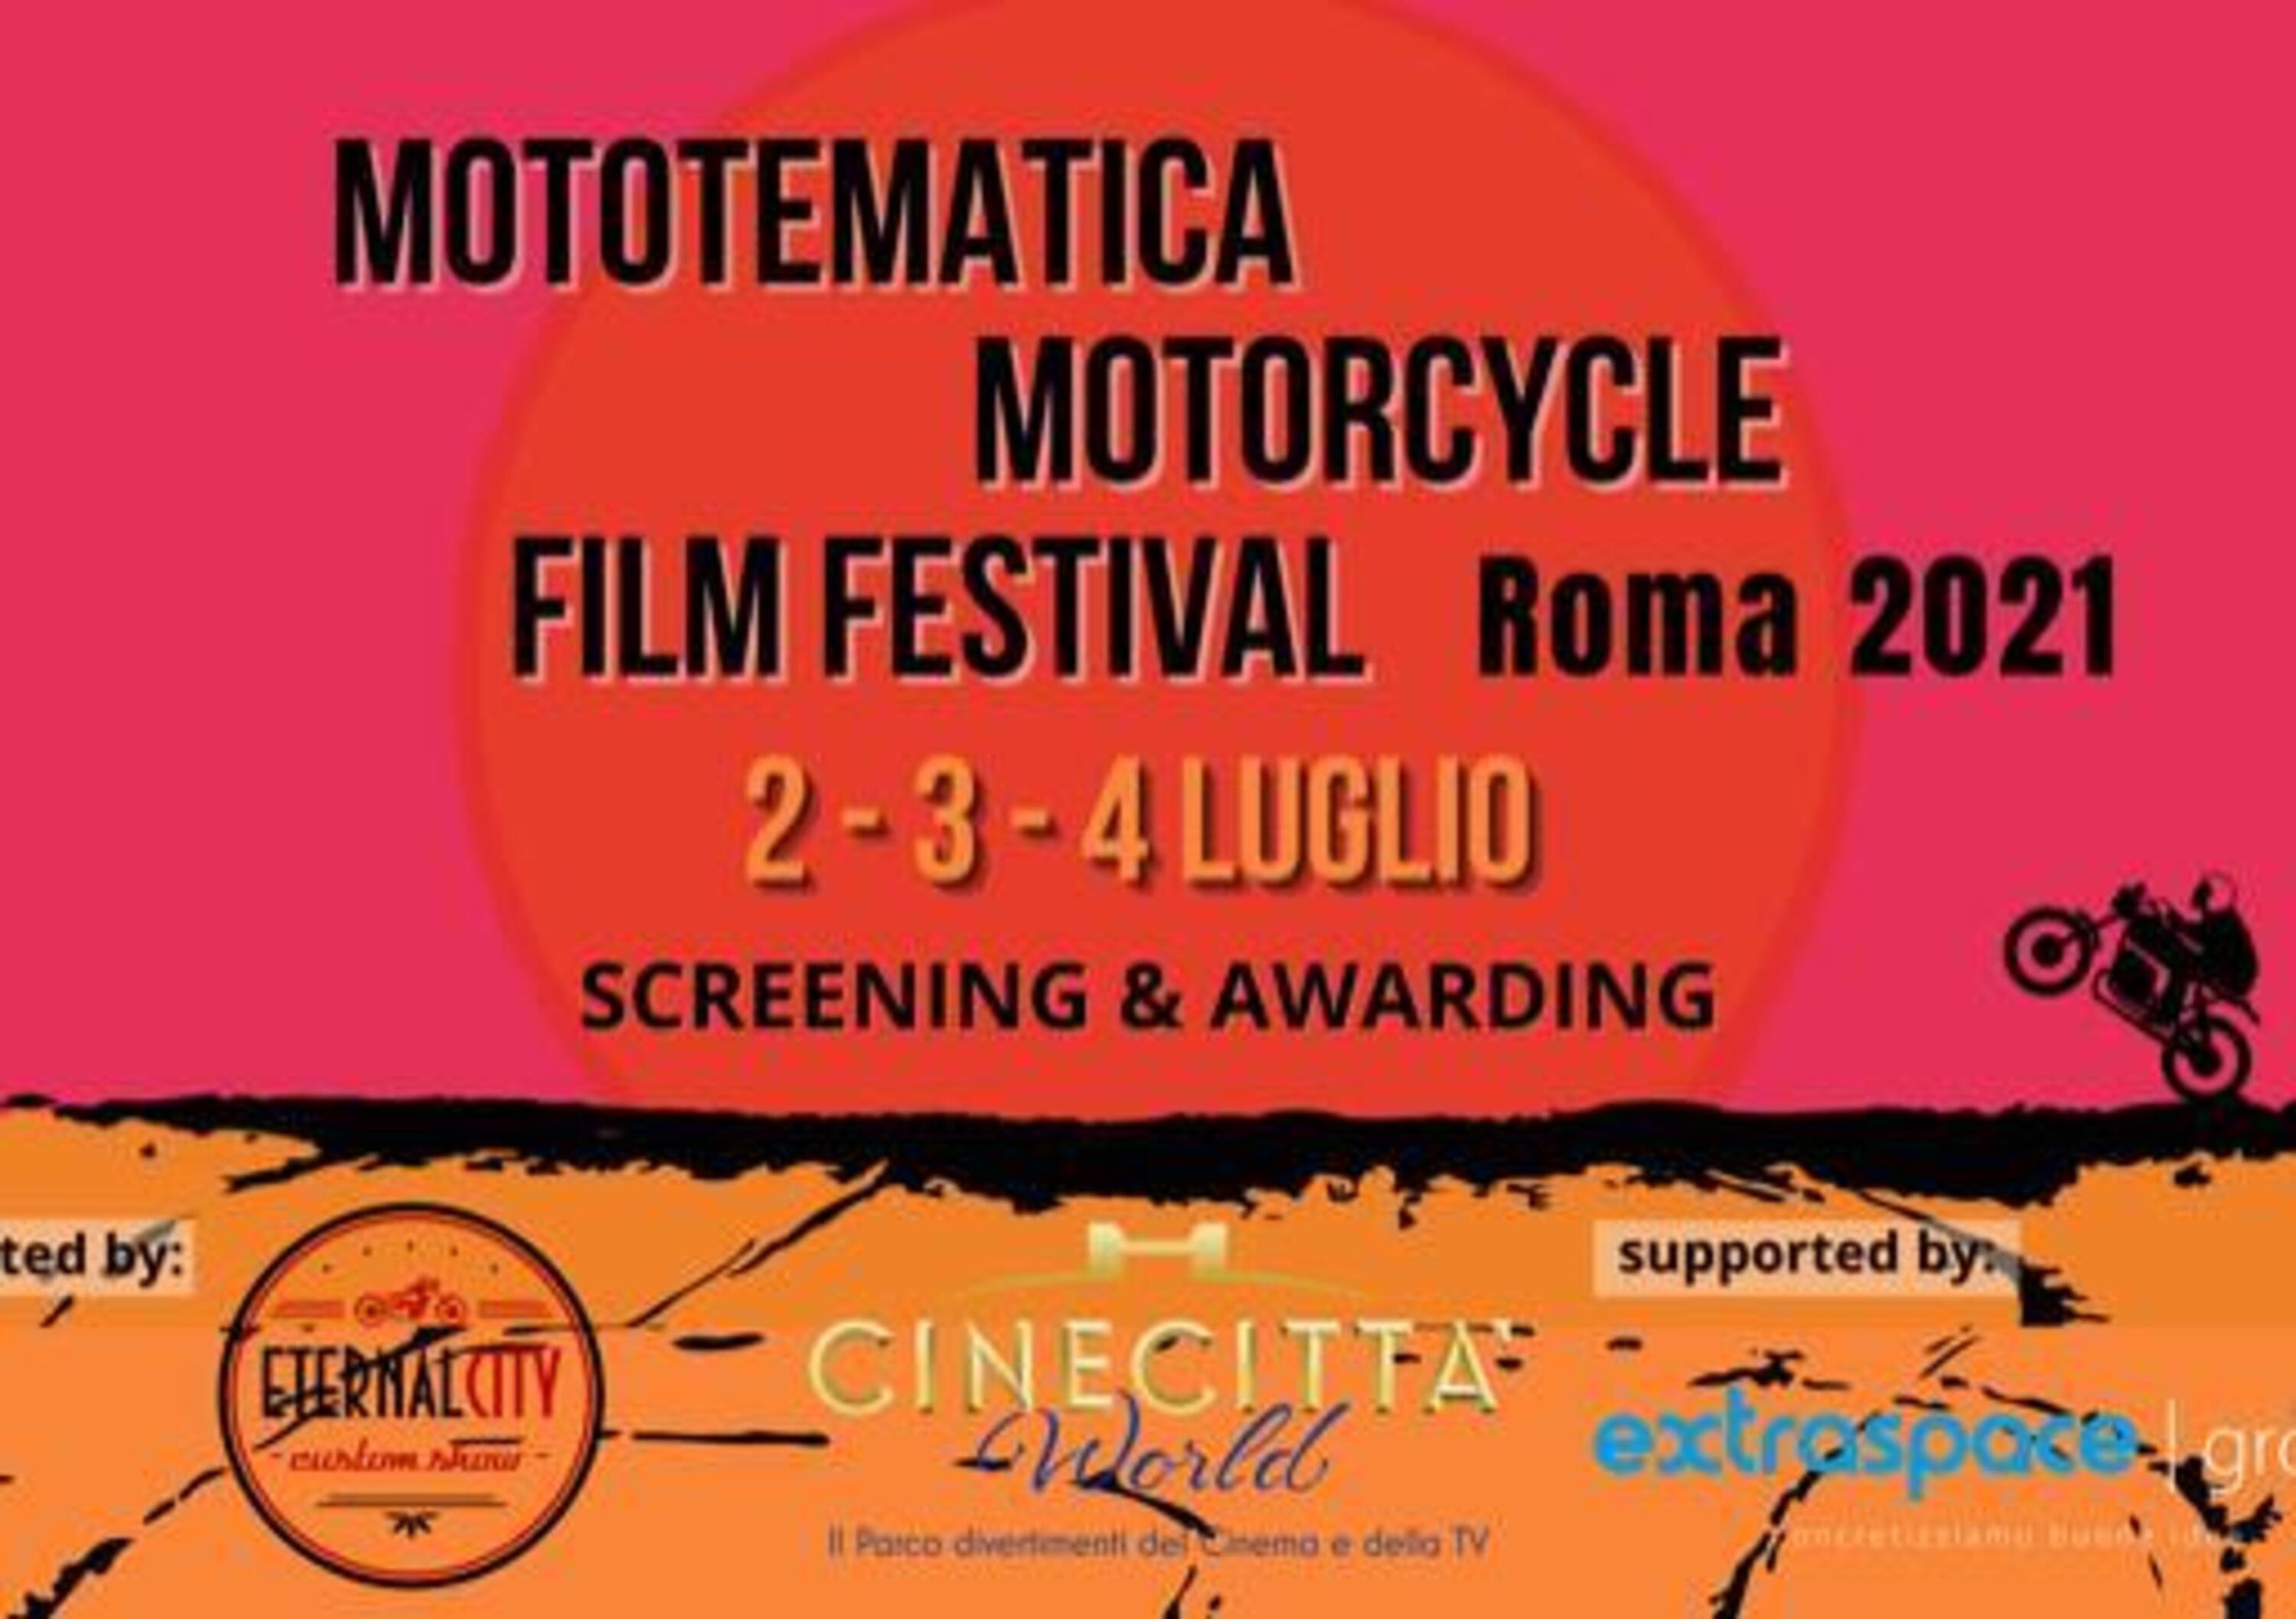 MotoTematica Motorcycle Film Festival, dal 2 al 4 luglio a Roma